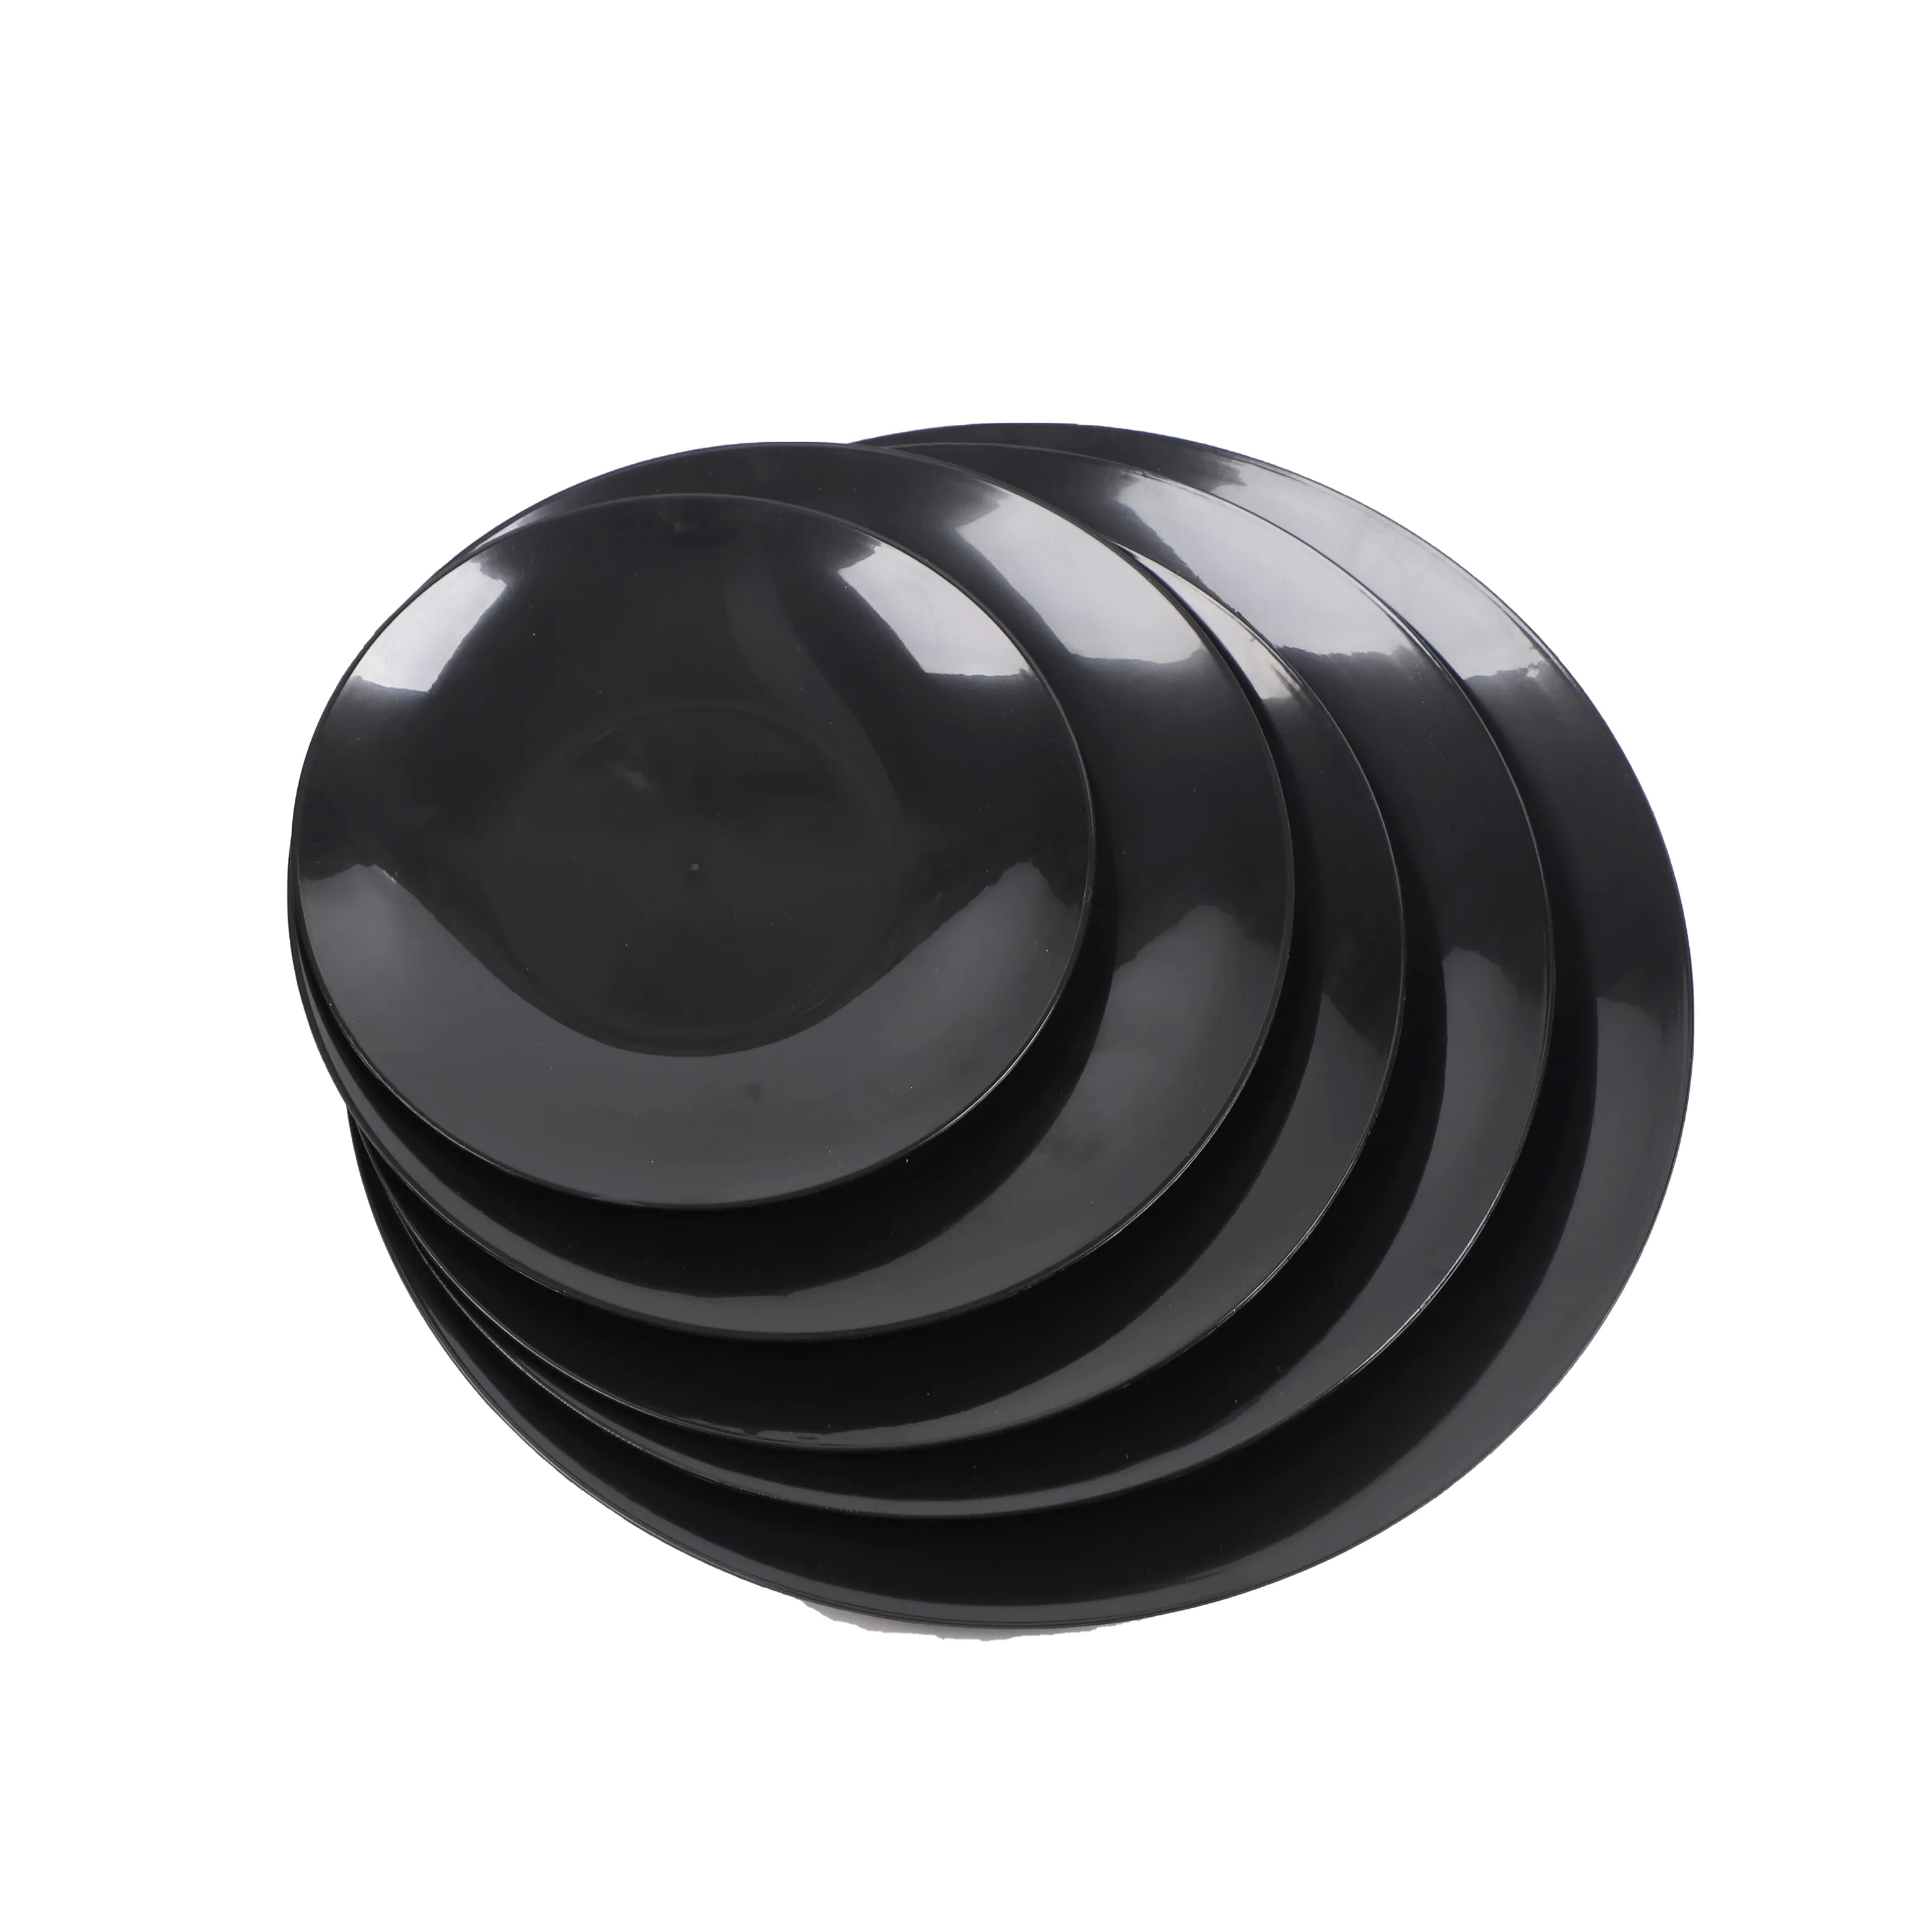 Plato de plástico moderno negro plato redondo de plástico desechable vajilla de plástico